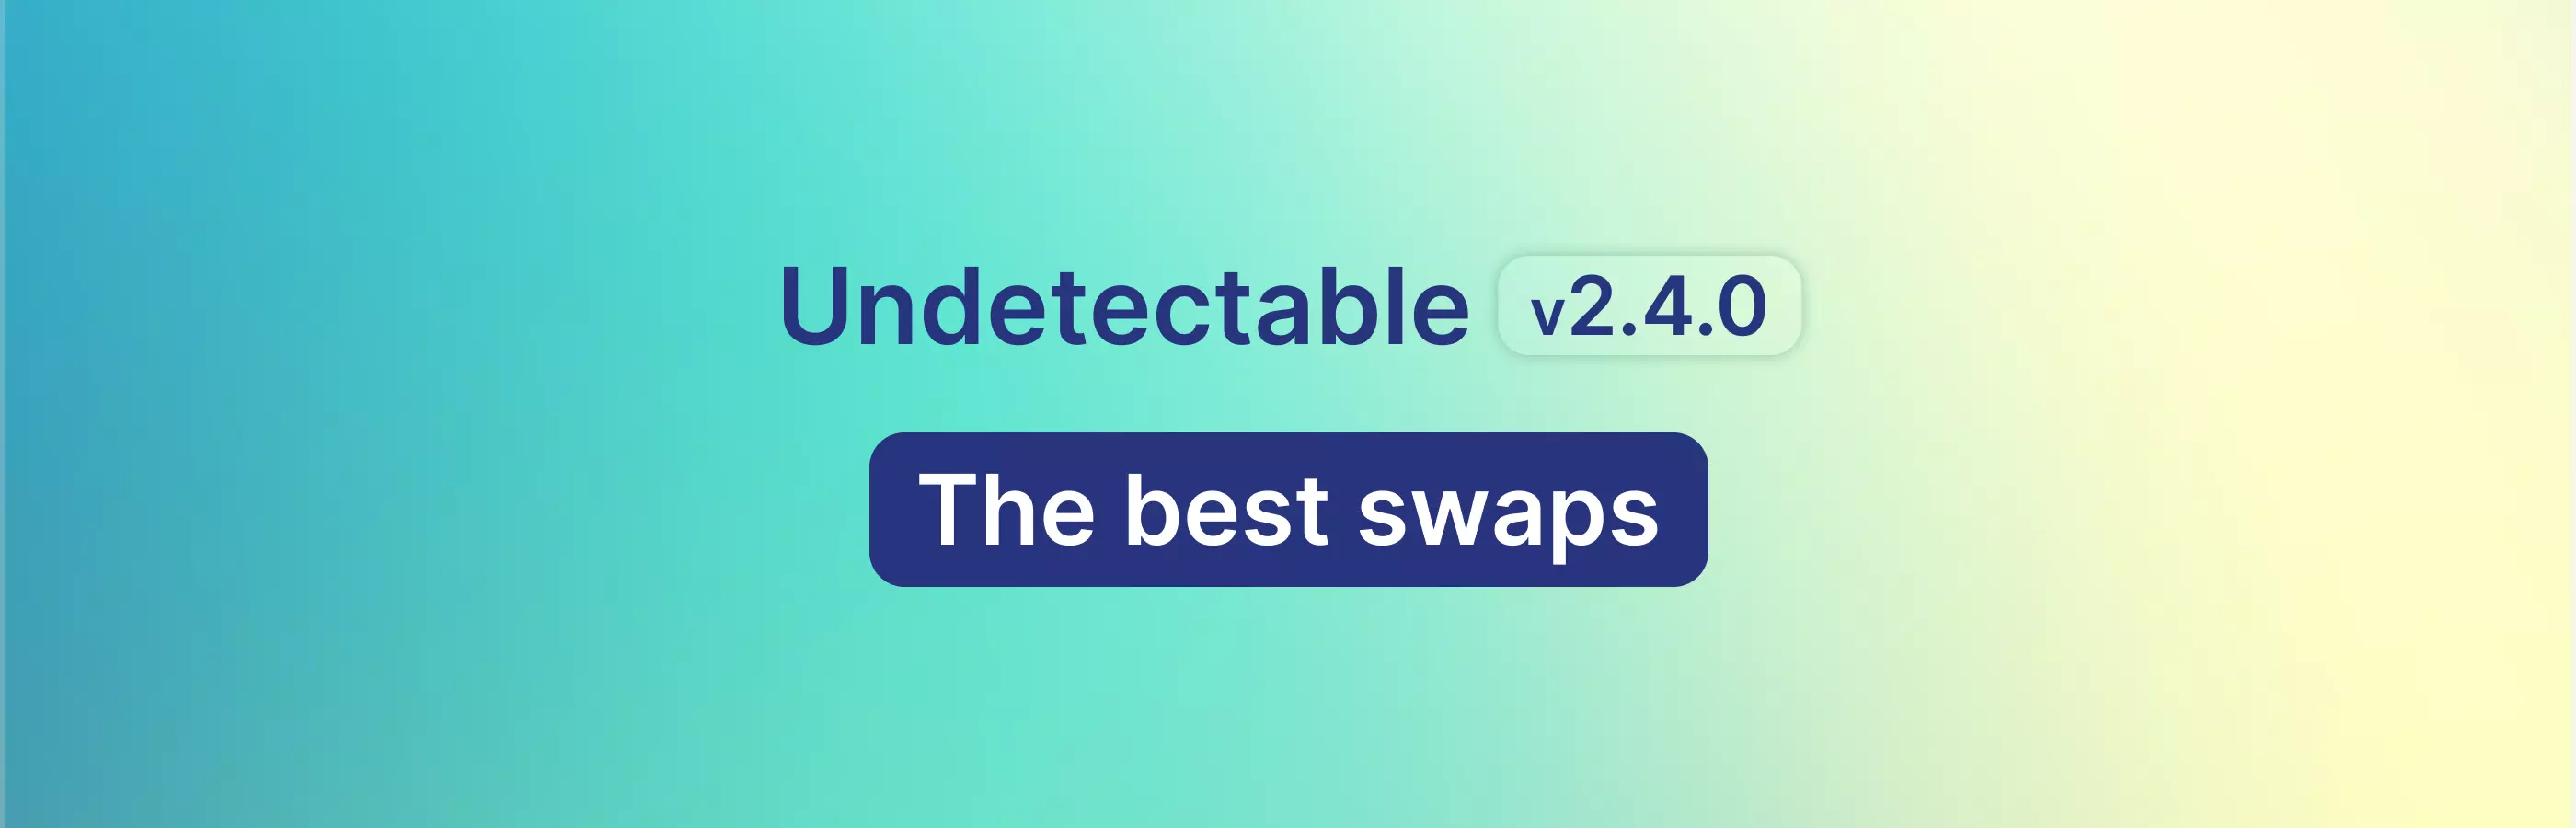 Aktualisierung von Undetectable 2.4.0 - Beste Substitutionsmethoden